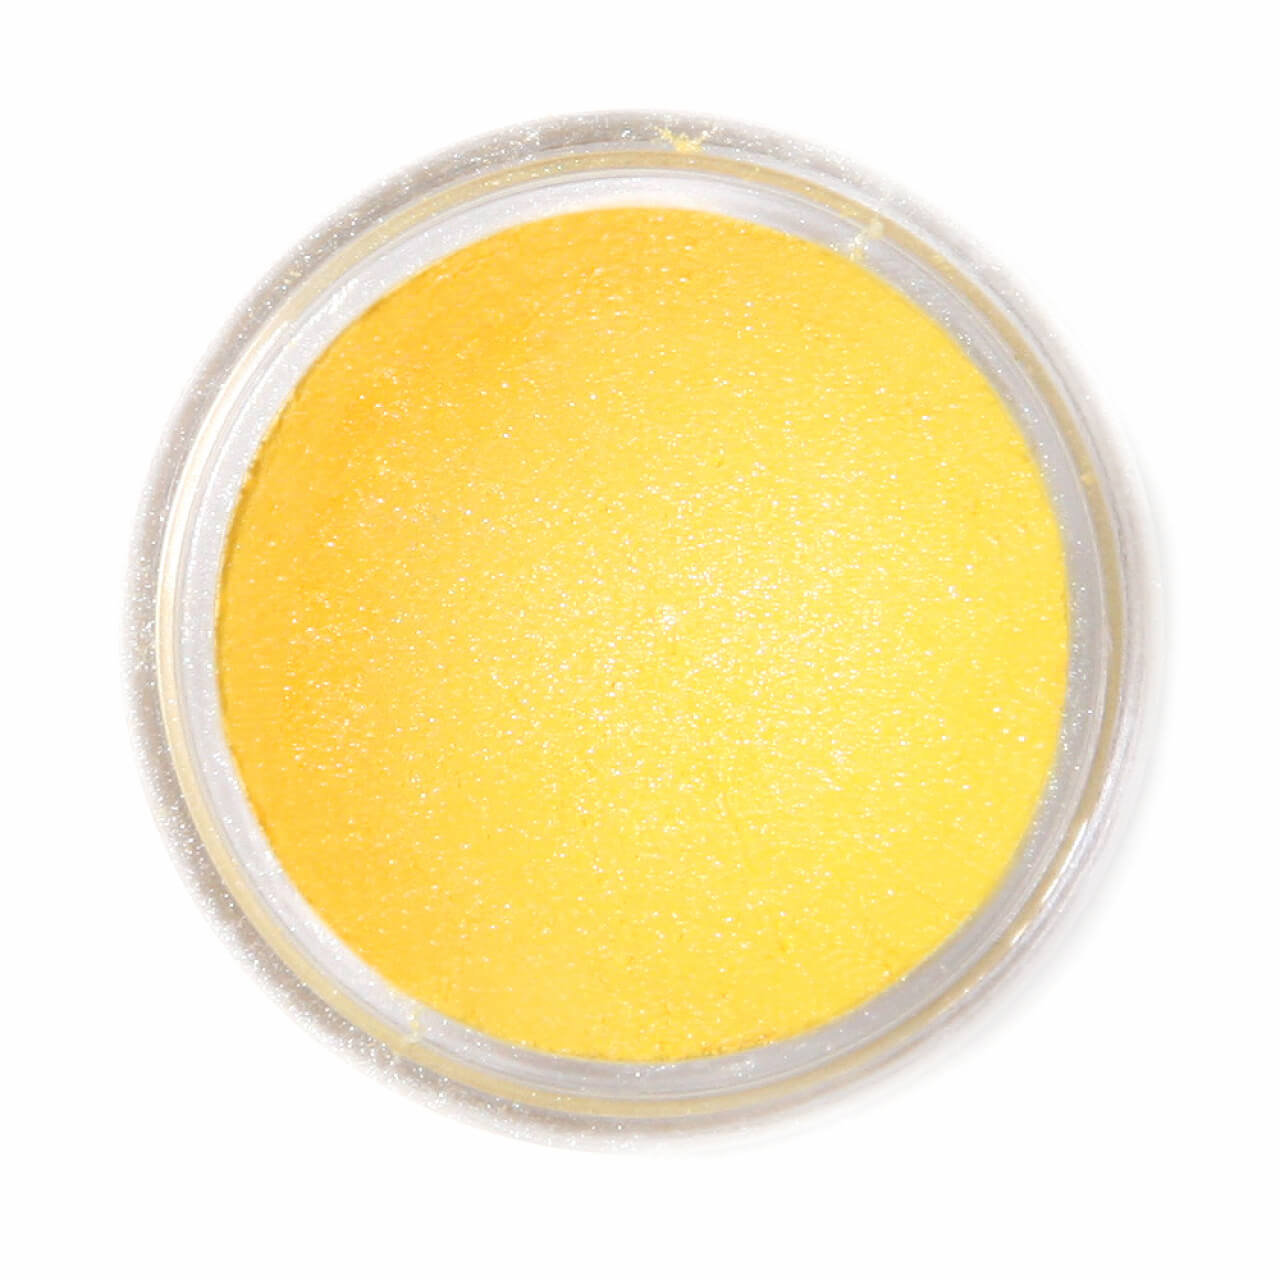 FRACTAL -Supearl Ételdekorációs Selyempor - Napsárga ( Sunflower Yellow ) - 1,5G